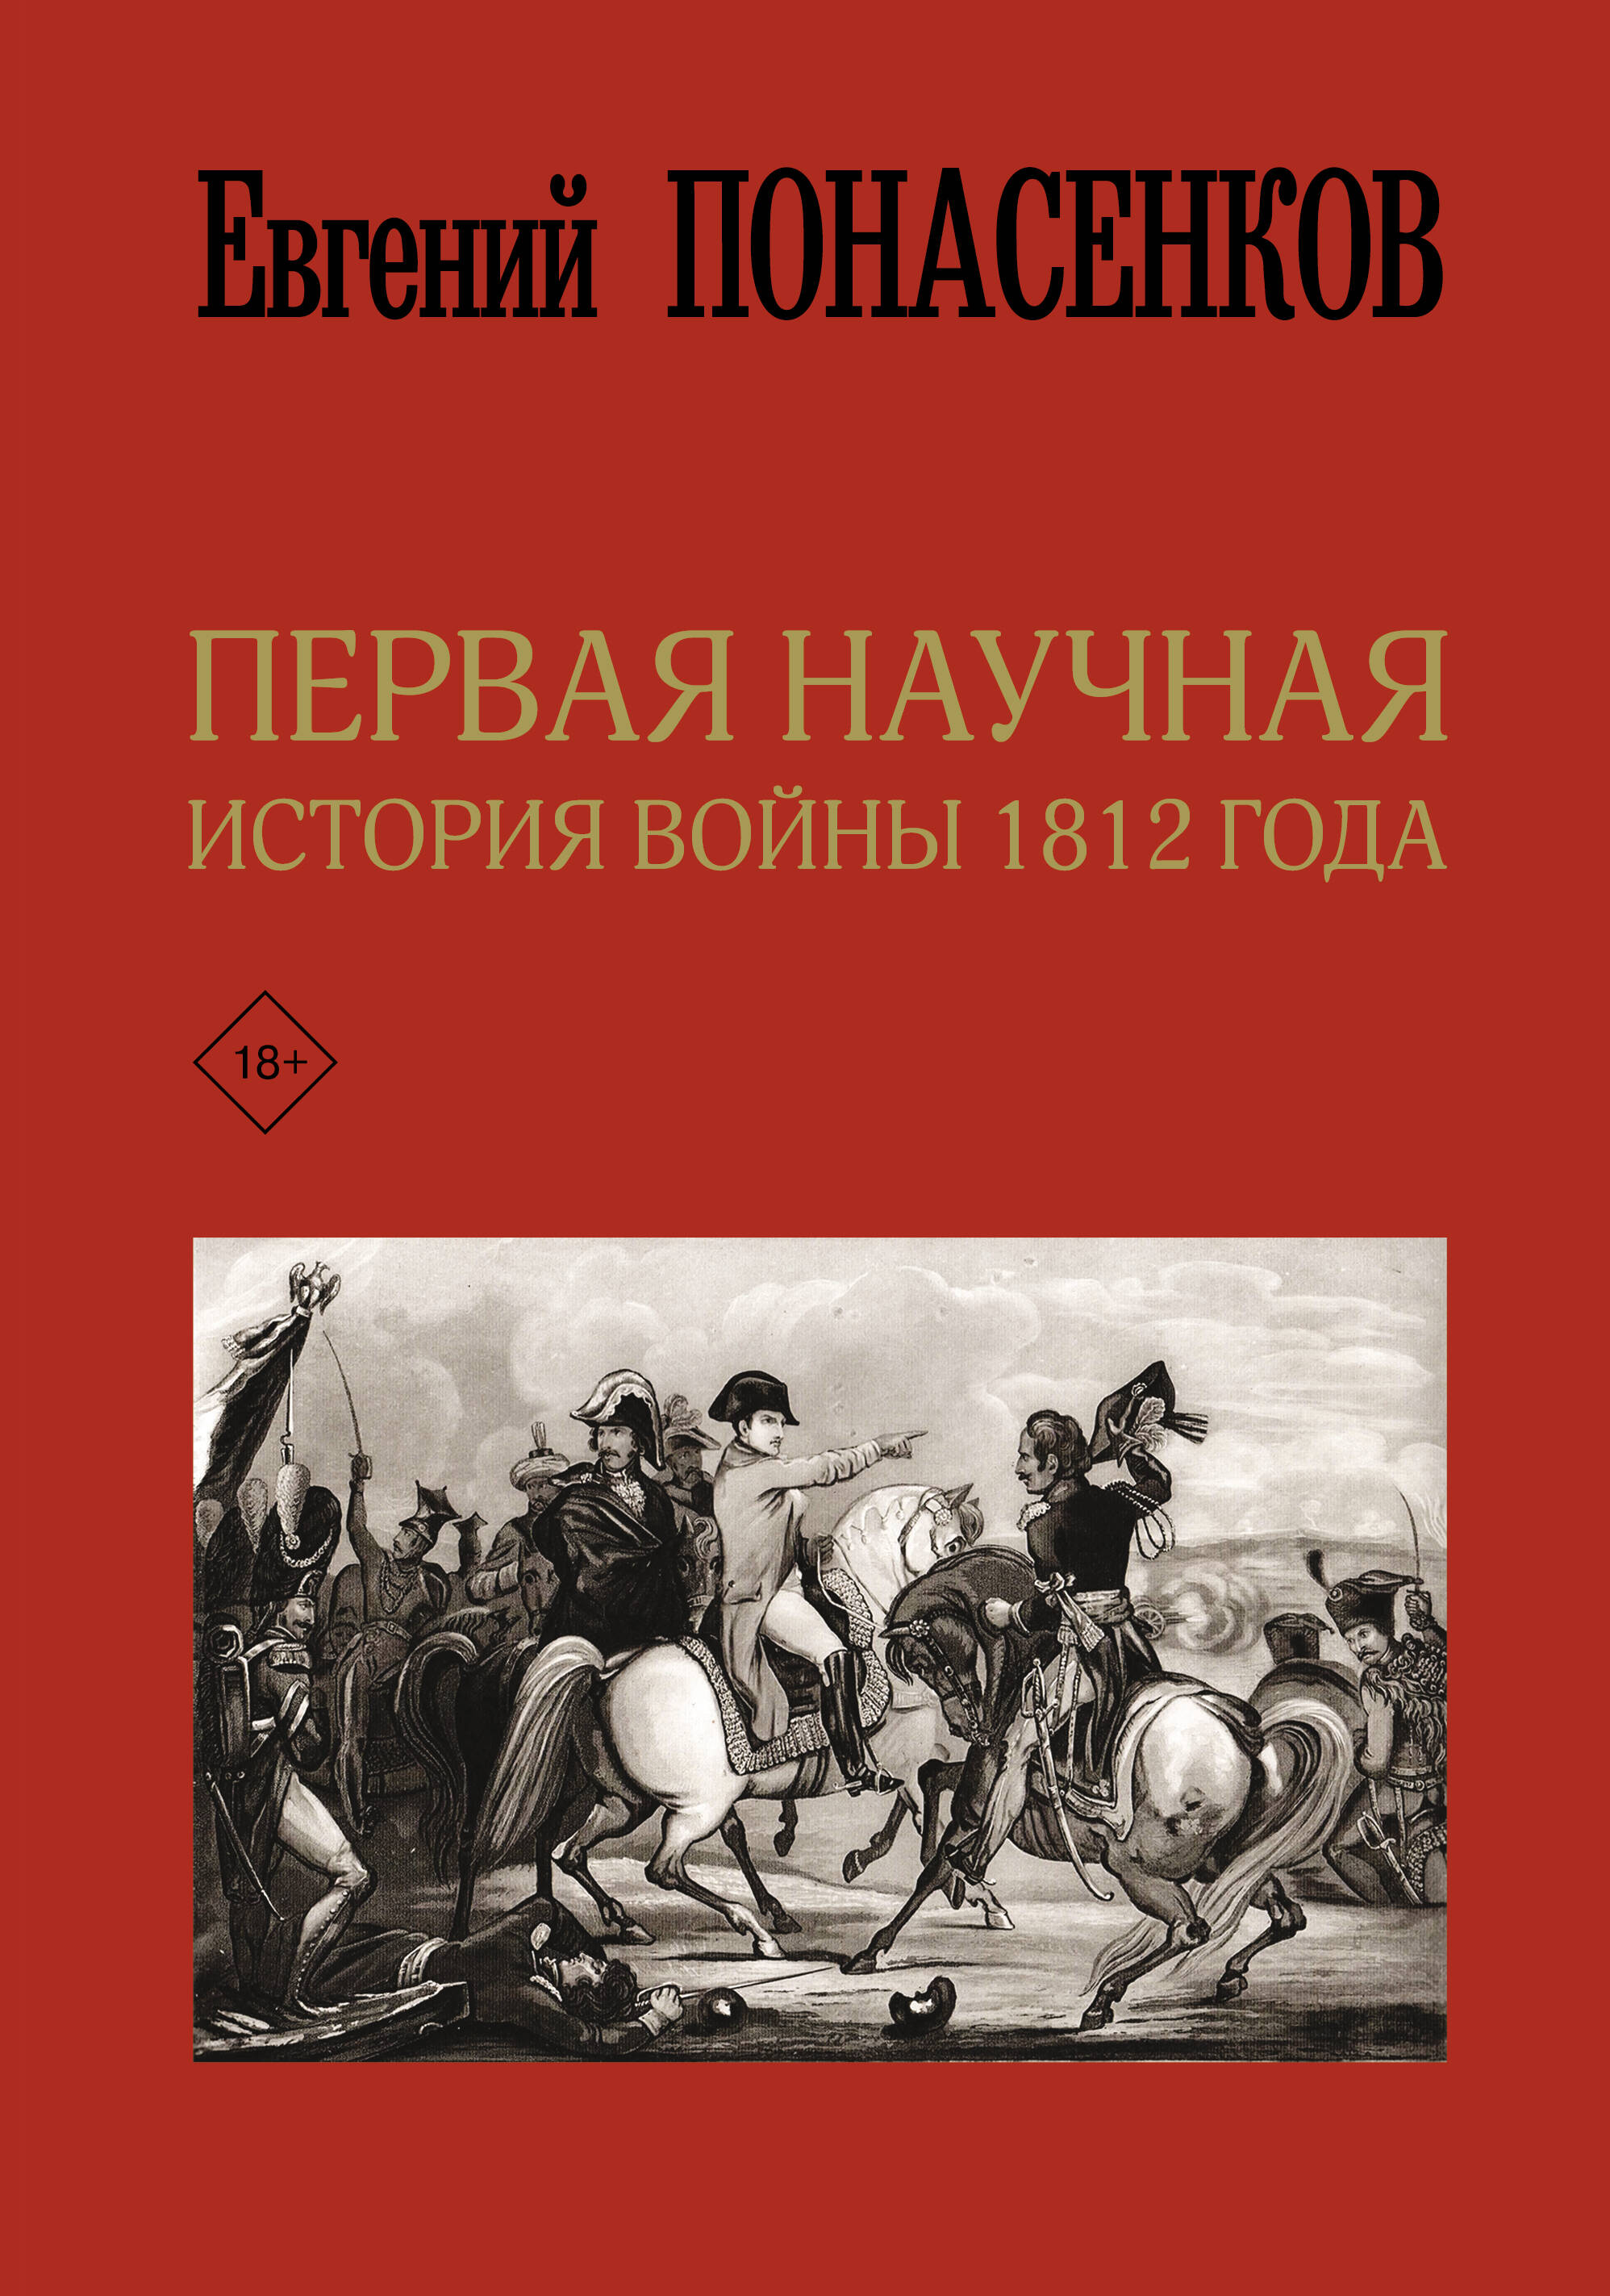 Понасенков Евгений Николаевич - Первая научная история войны 1812 года